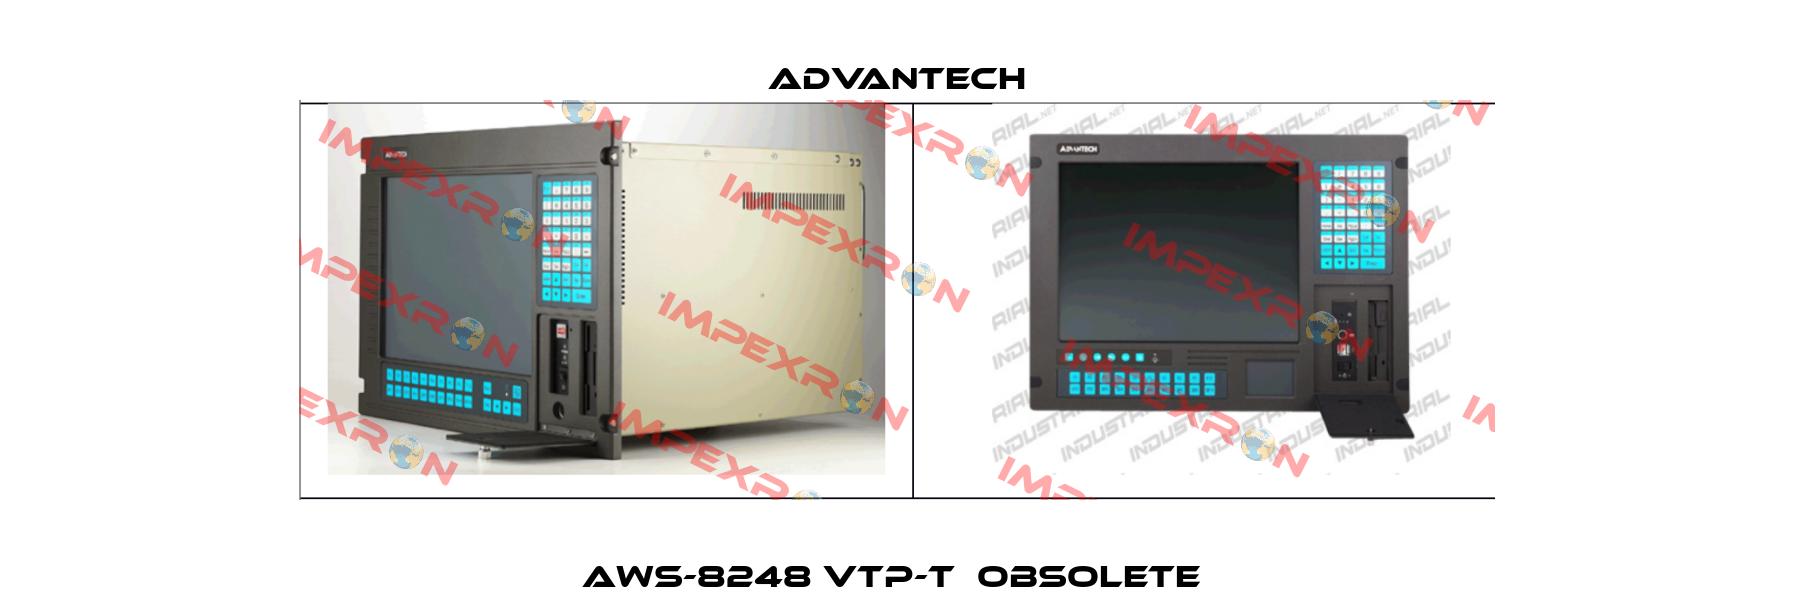 AWS-8248 VTP-T  Obsolete  Advantech